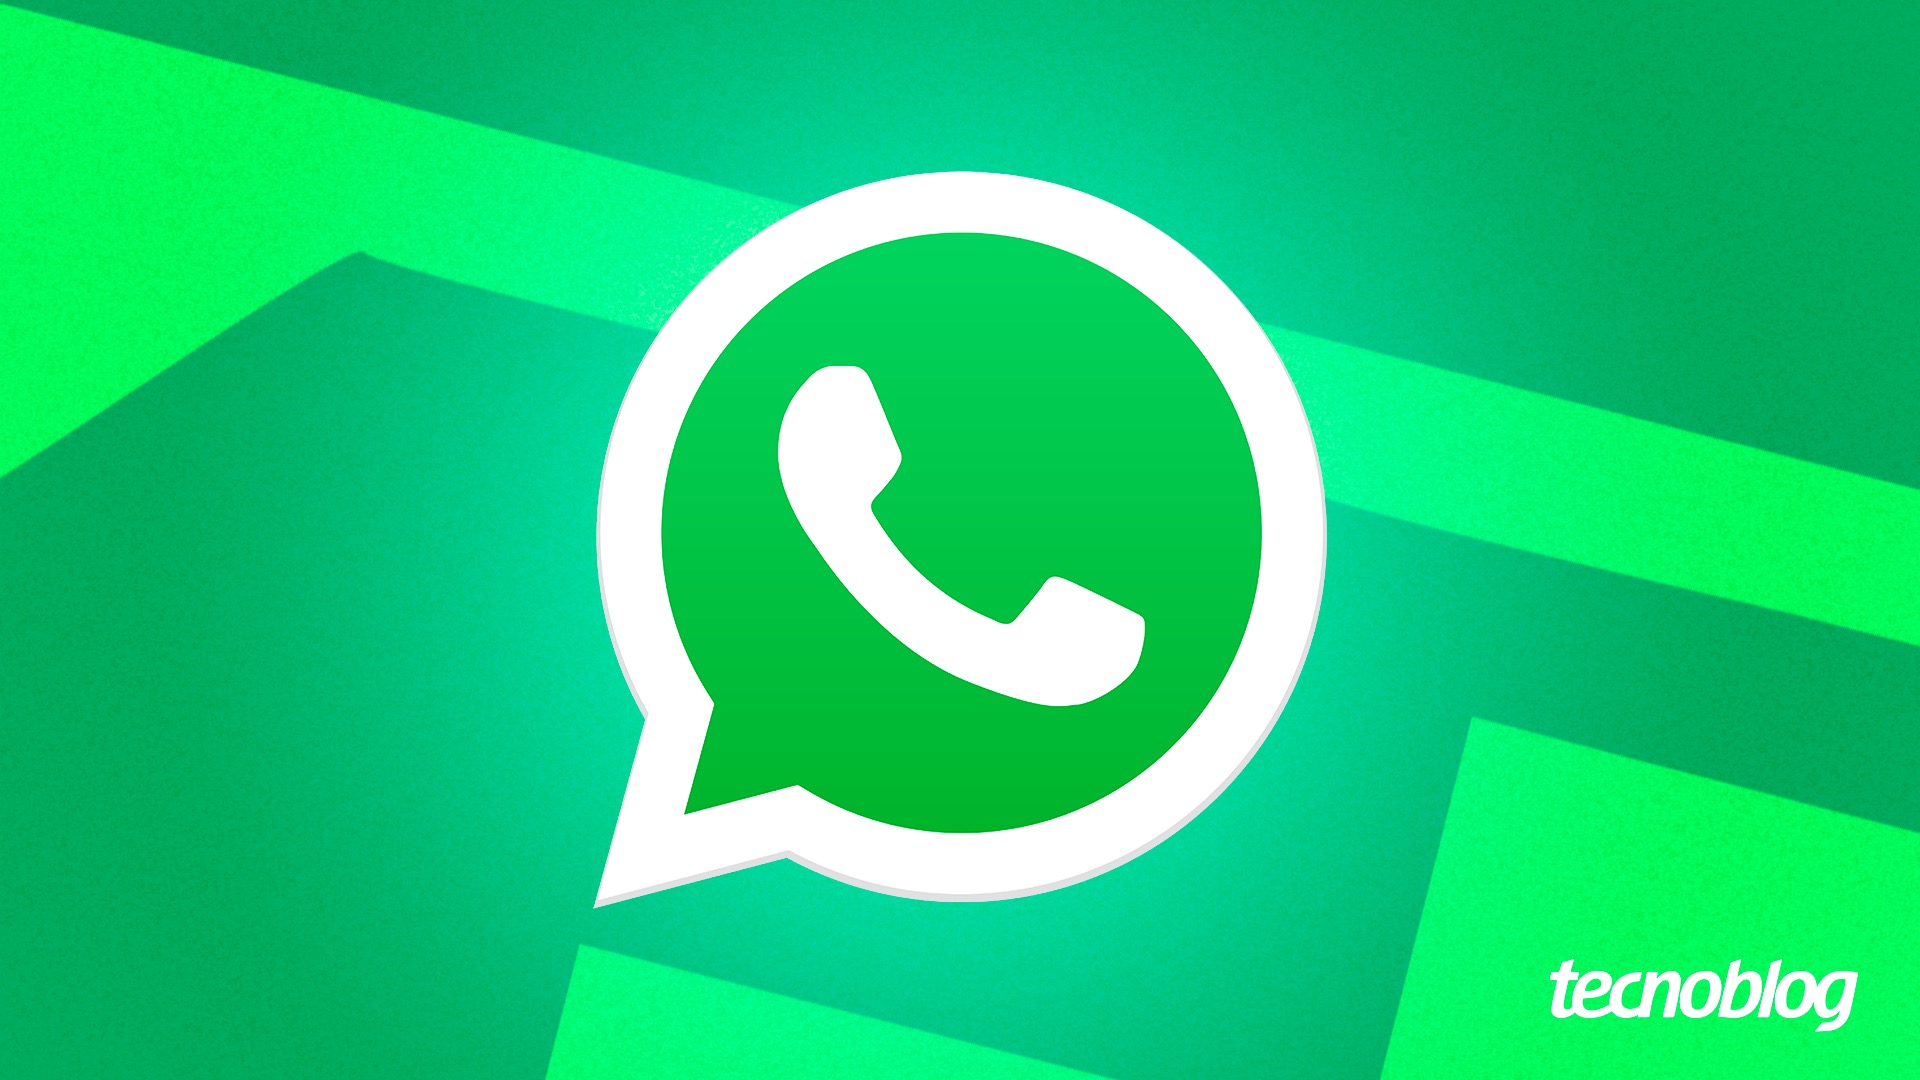 App espião brasileiro se passa por WhatsApp e vê tudo que você faz